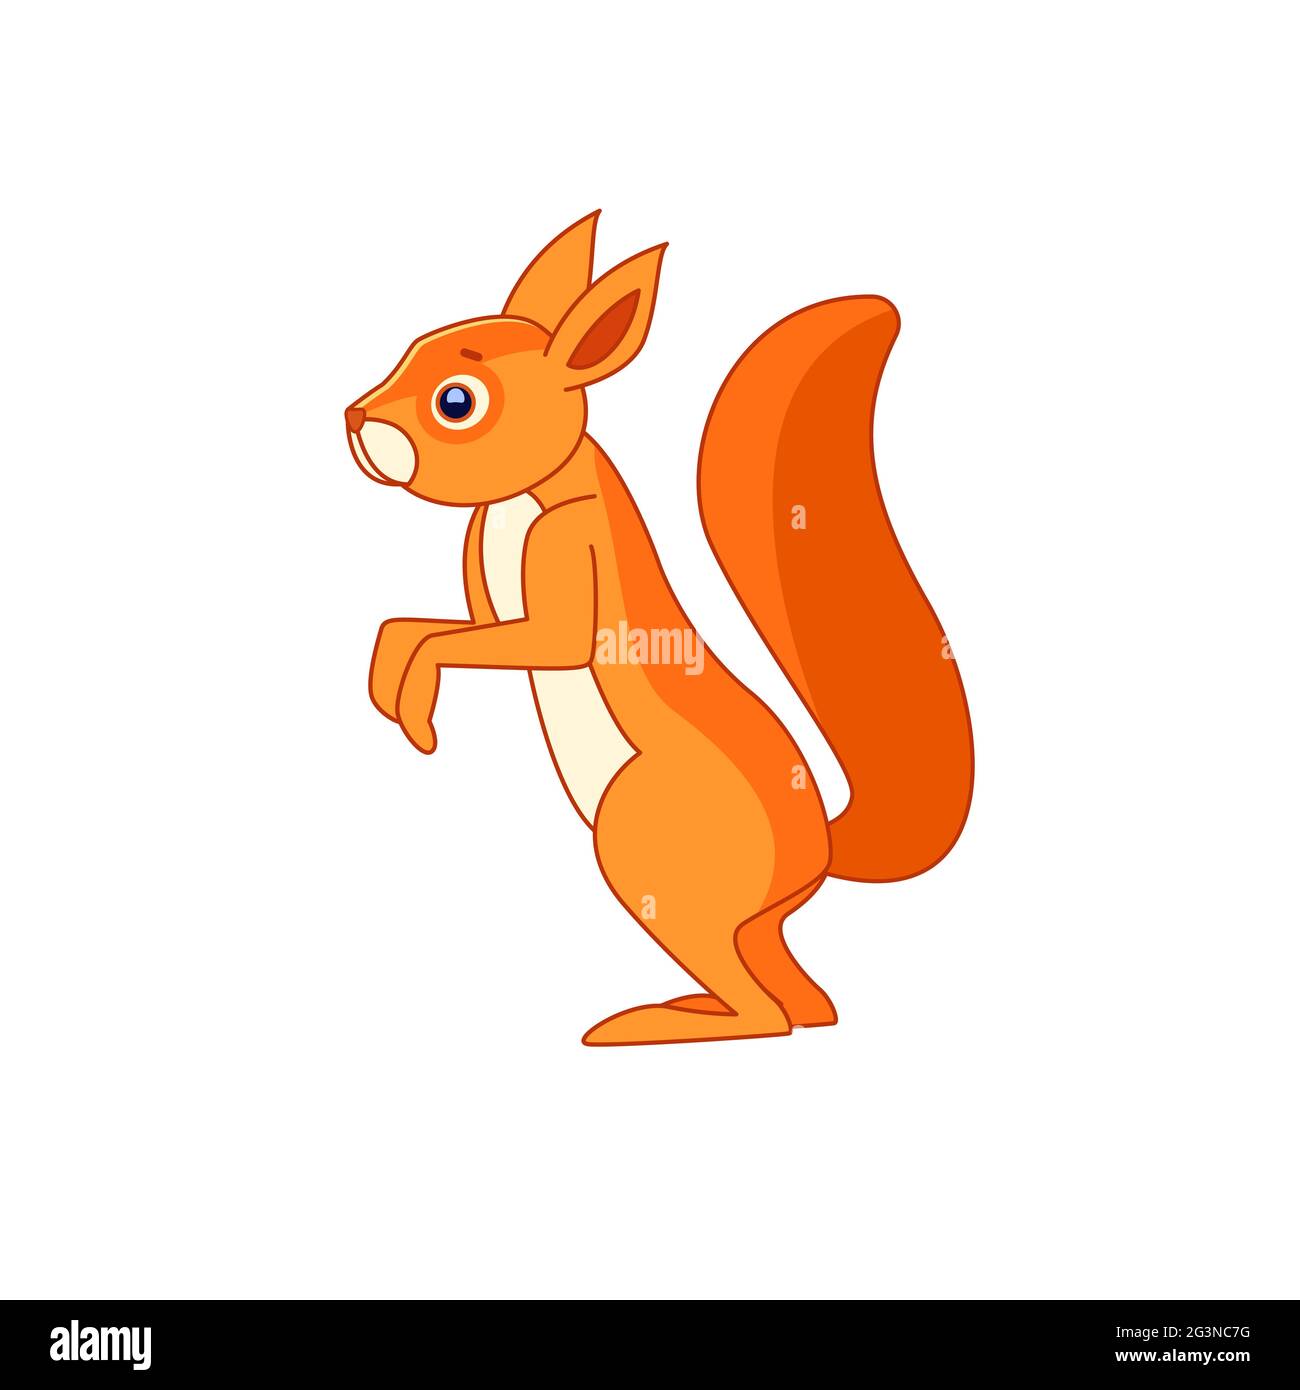 Cute Eichhörnchen steht und sieht neugierig. Zeichentrickfigur eines Säugetiernagers. Ein wildes Waldgeschöpf mit orangefarbenem Fell. Seitenansicht. Vektor flach Stock Vektor